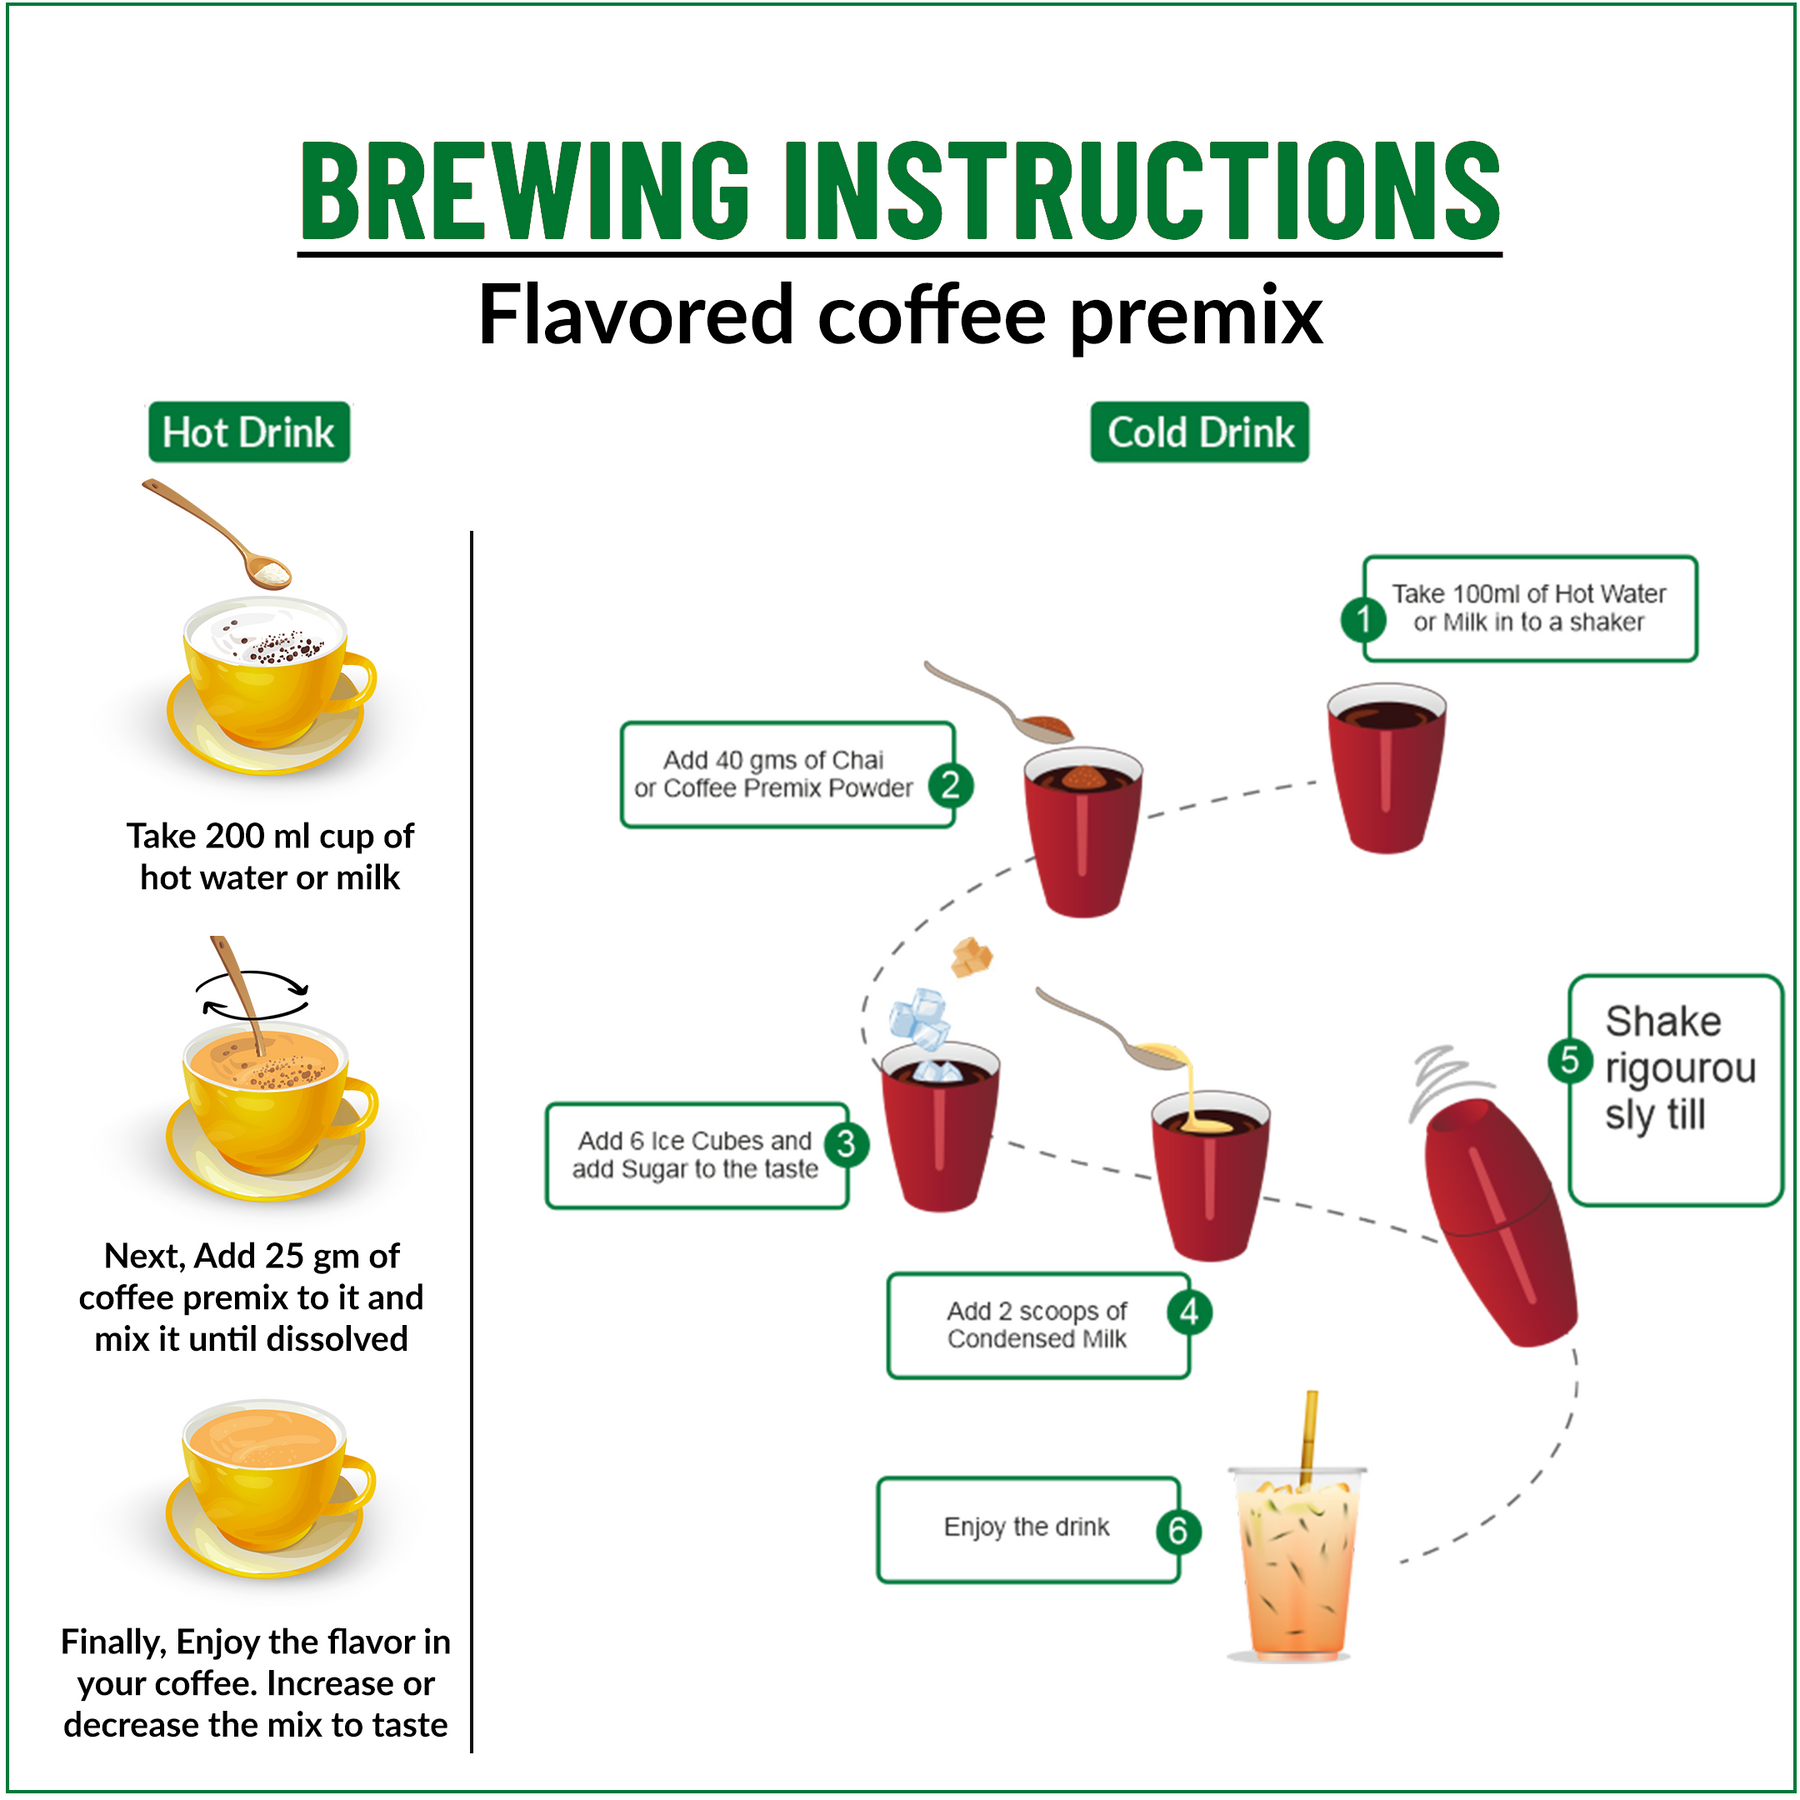 Hazelnut Instant Coffee Premix (3 in 1) - 250 gms